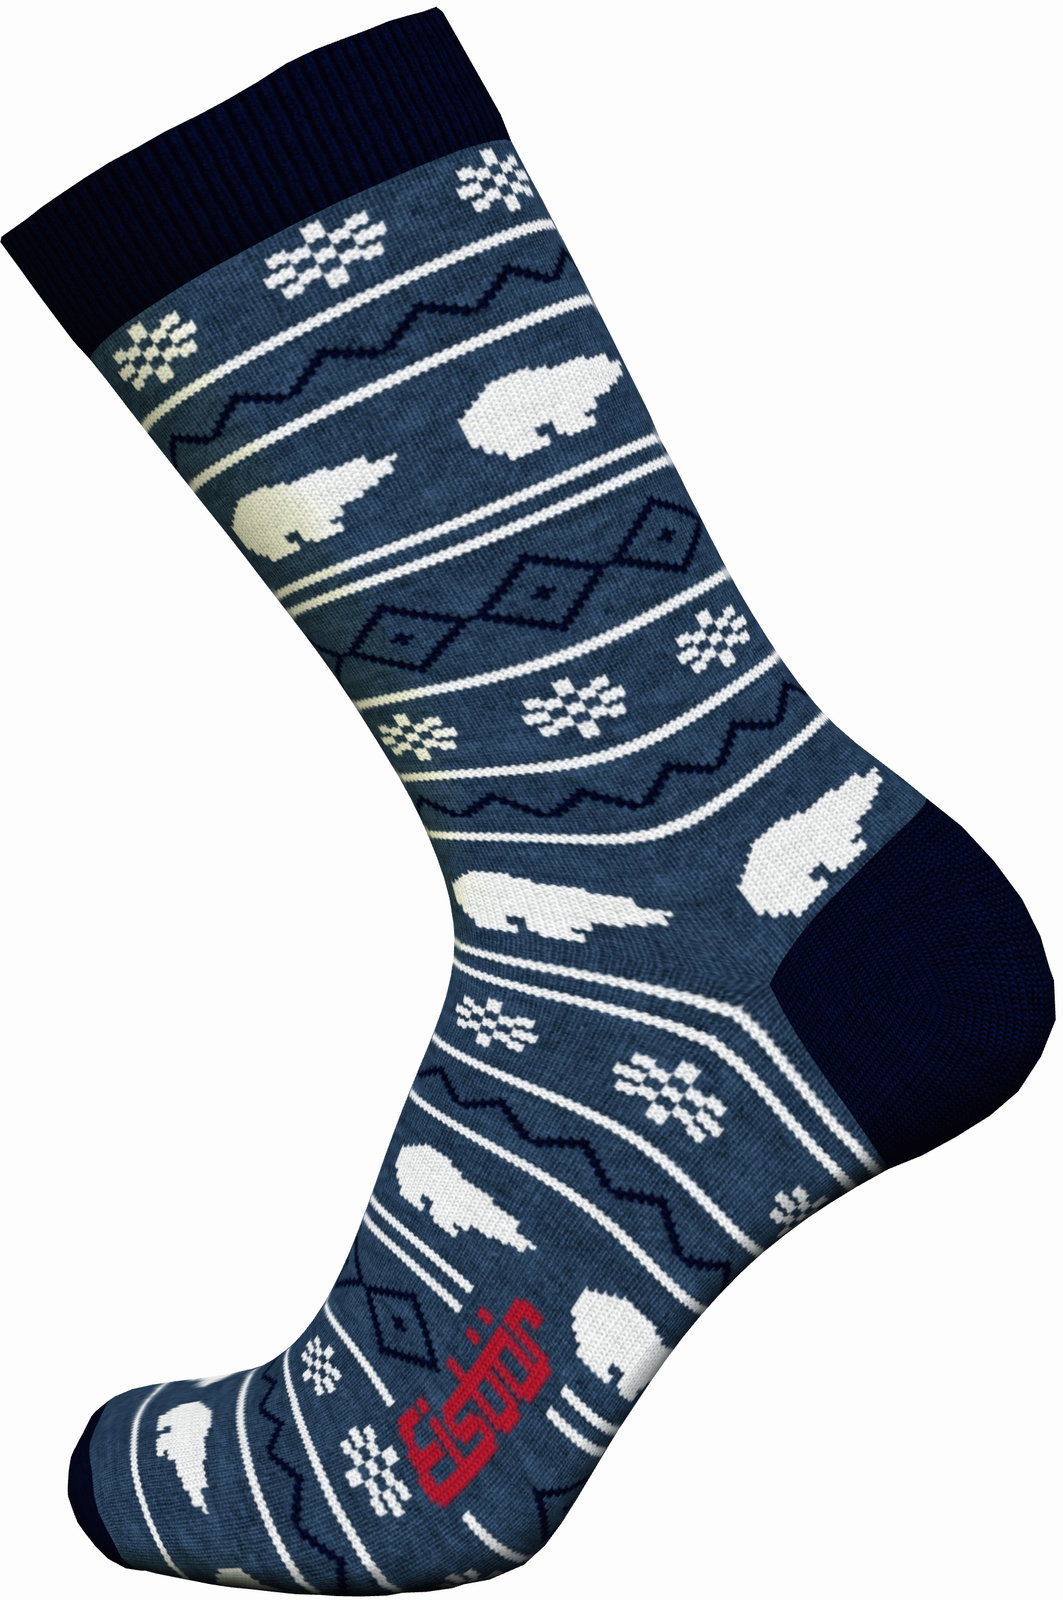 Skijaške čarape Eisbär Lifestyle Jacquard Avio/Navy-Grey/White 39-42 Skijaške čarape